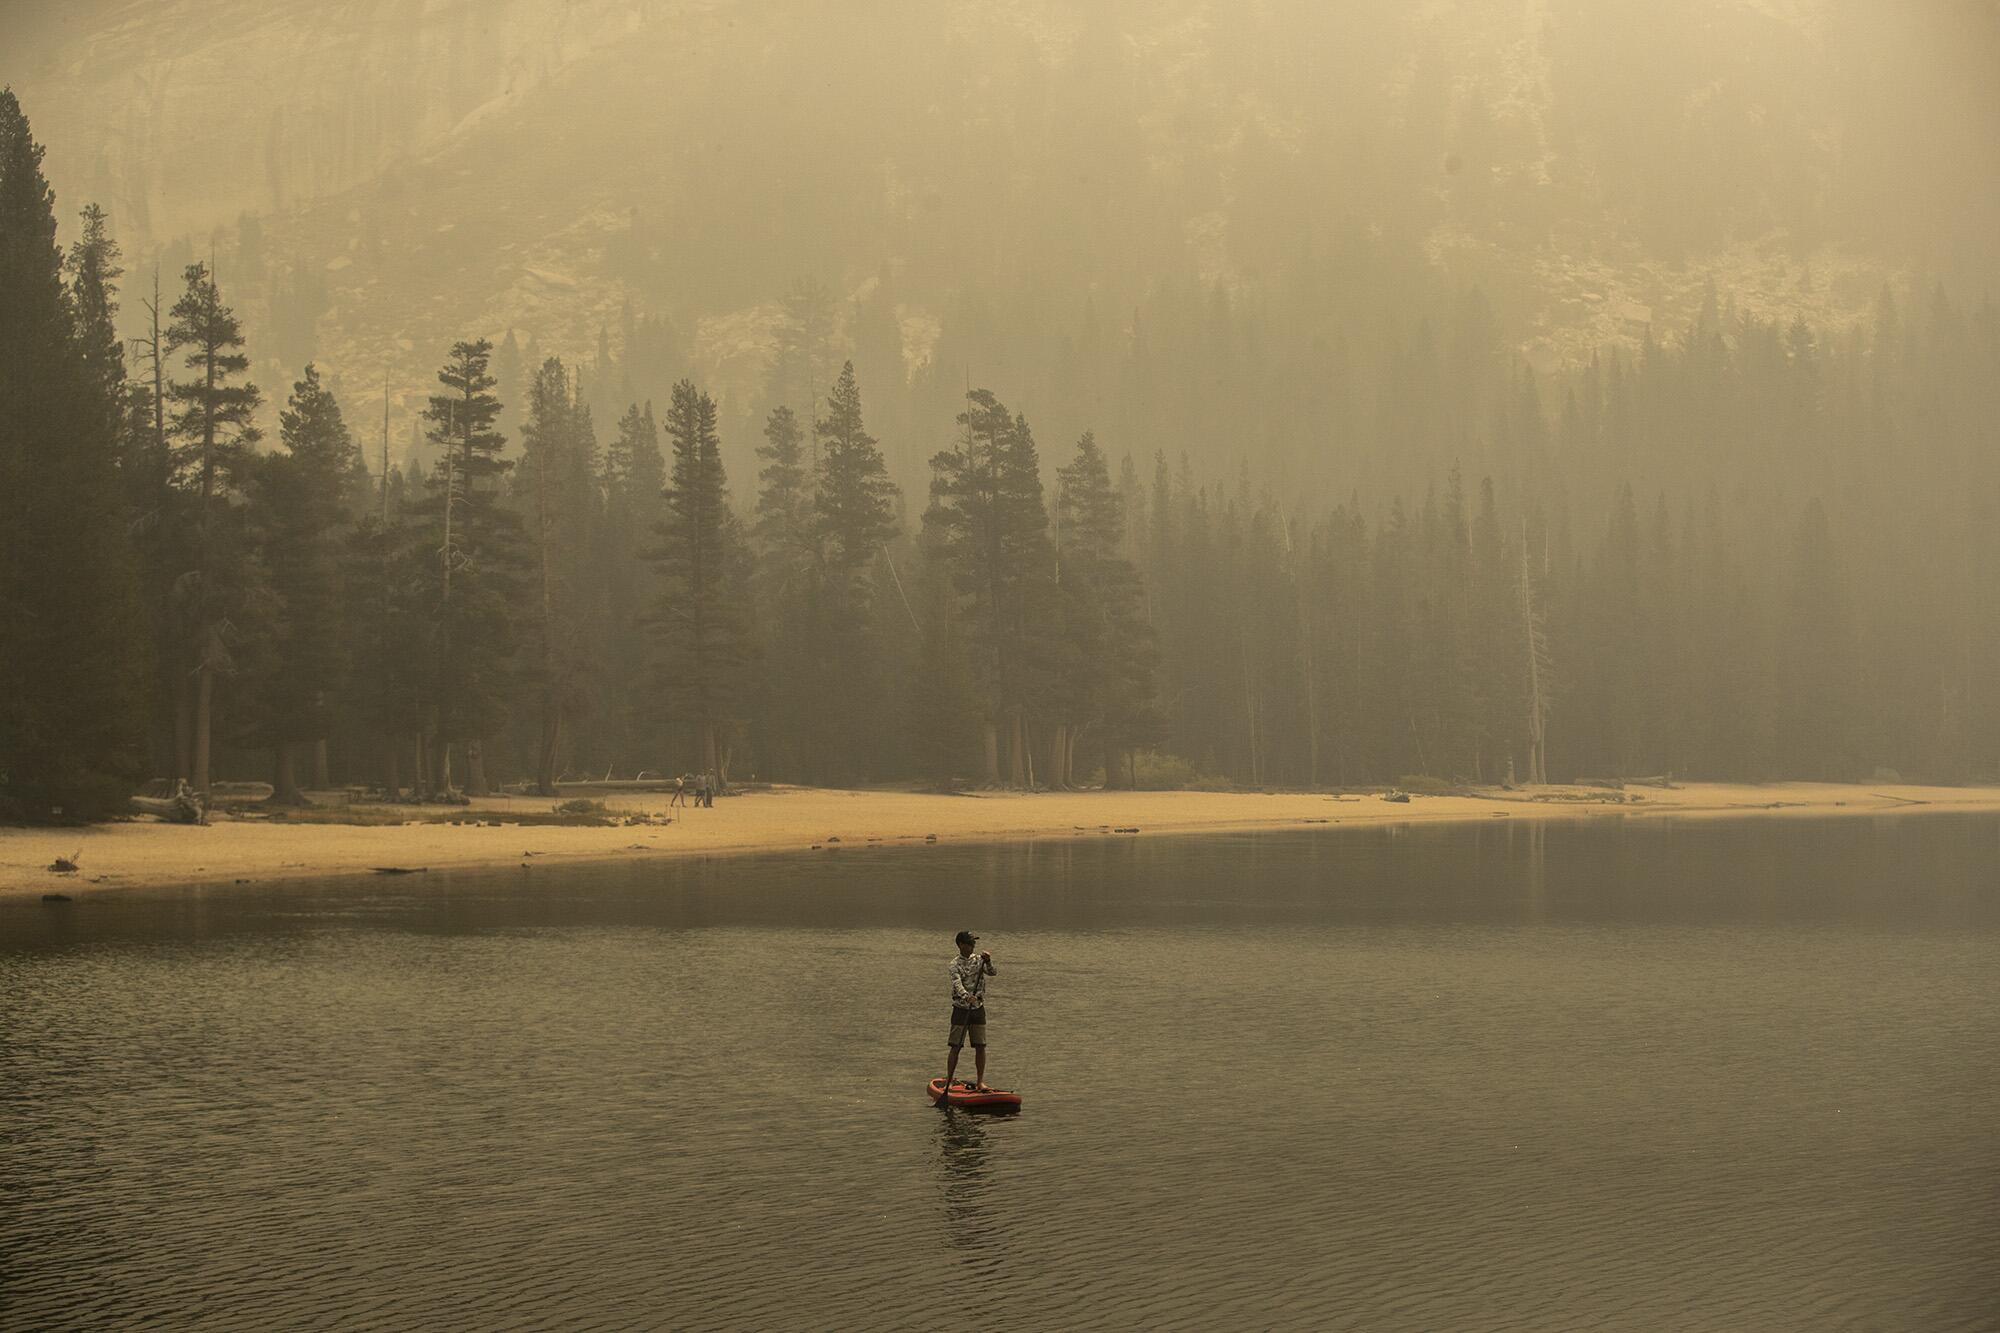 Eine einsame Figur paddelt auf einem rauchverhangenen See.